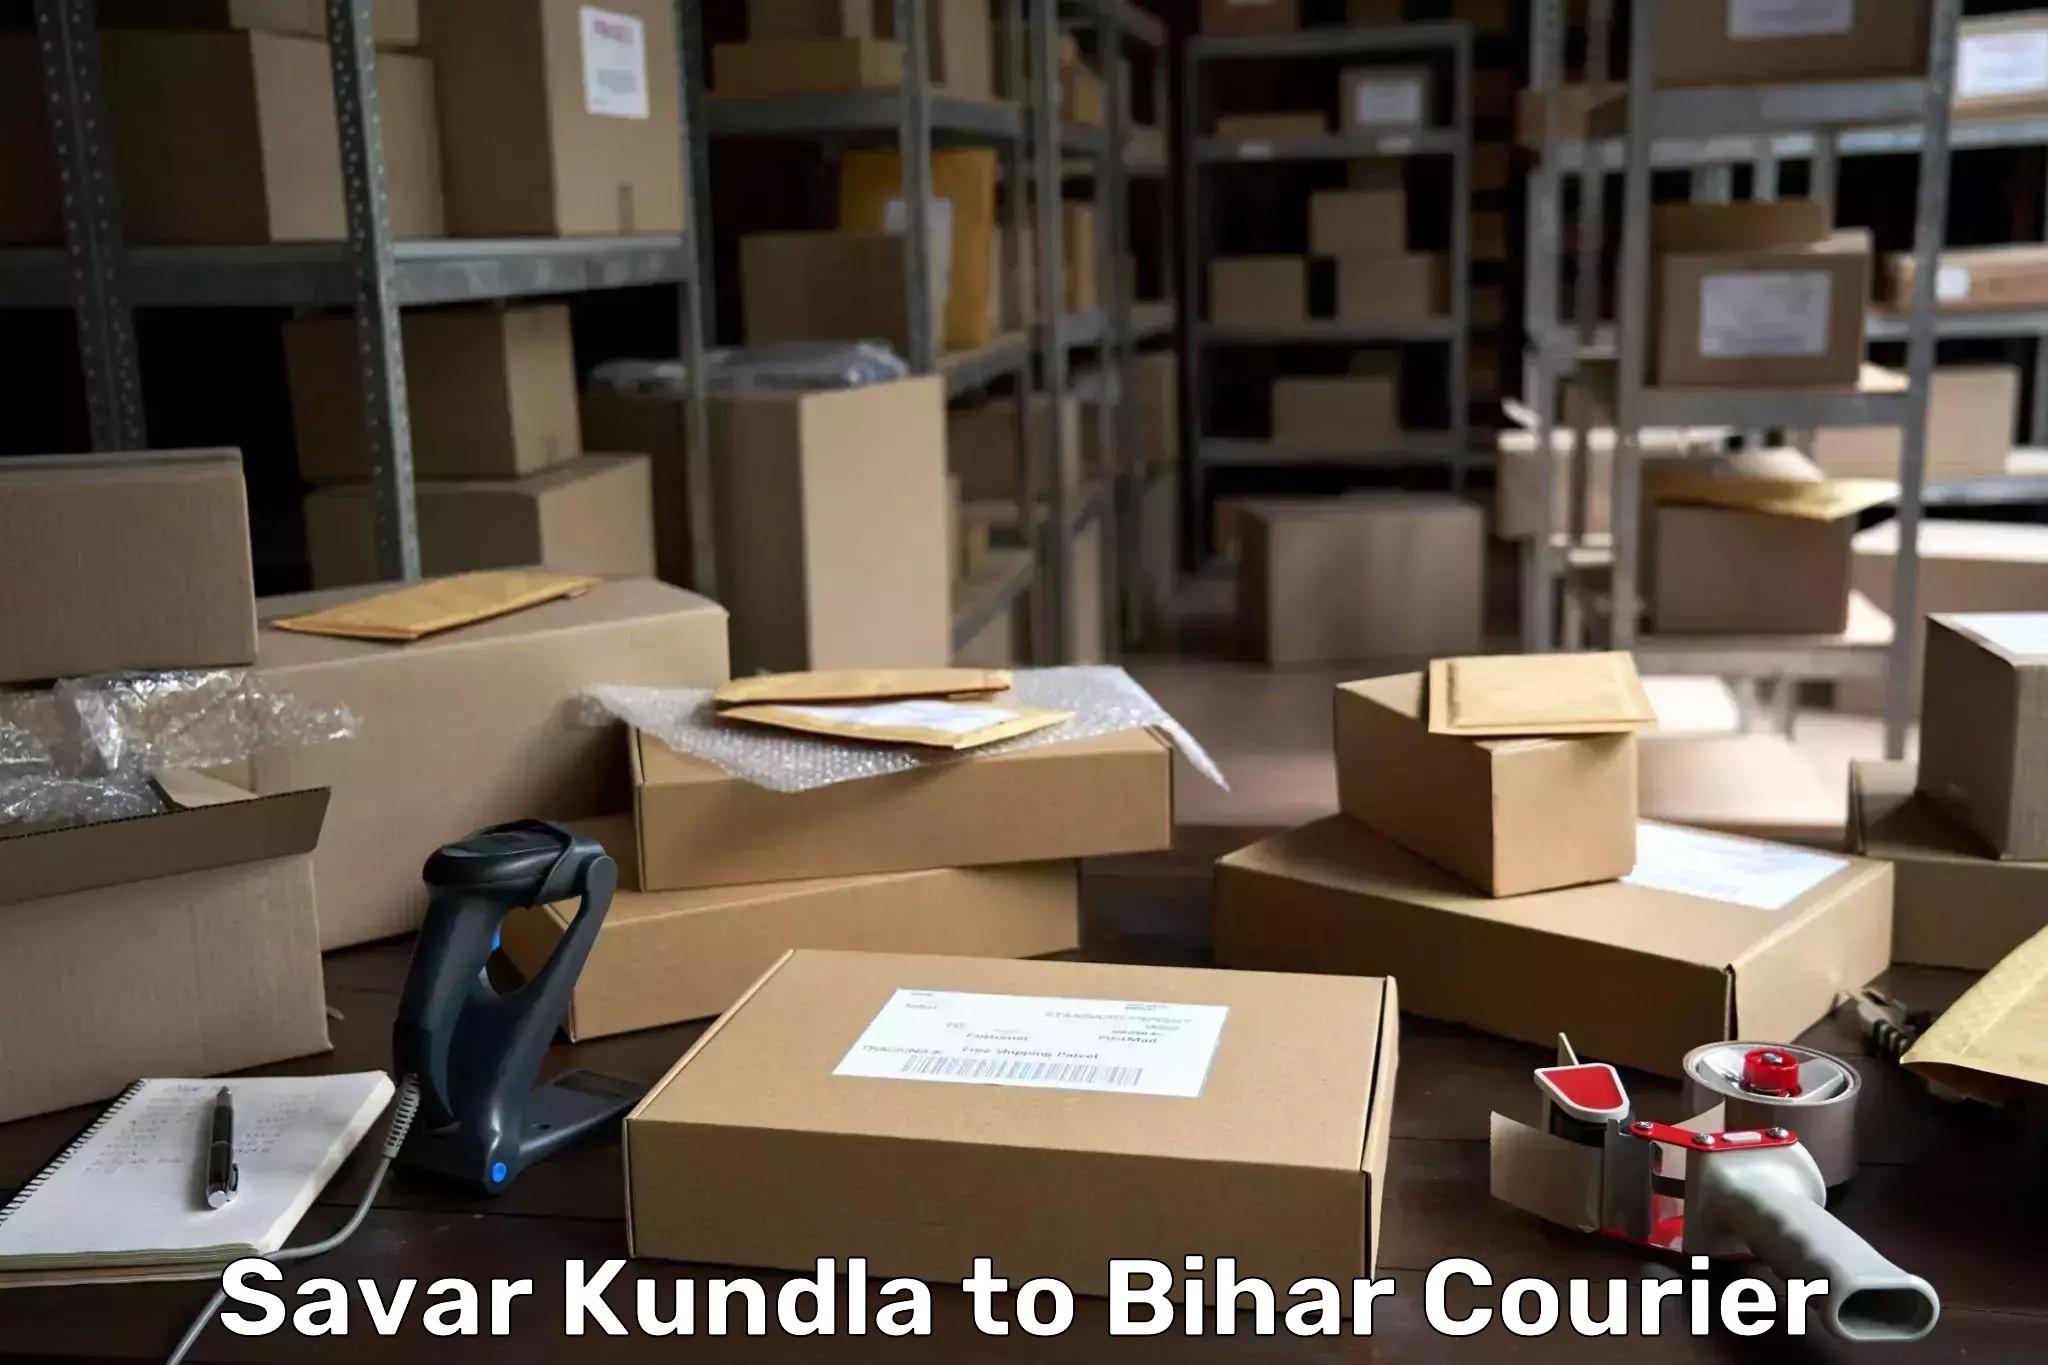 Bulk shipment Savar Kundla to Bihar